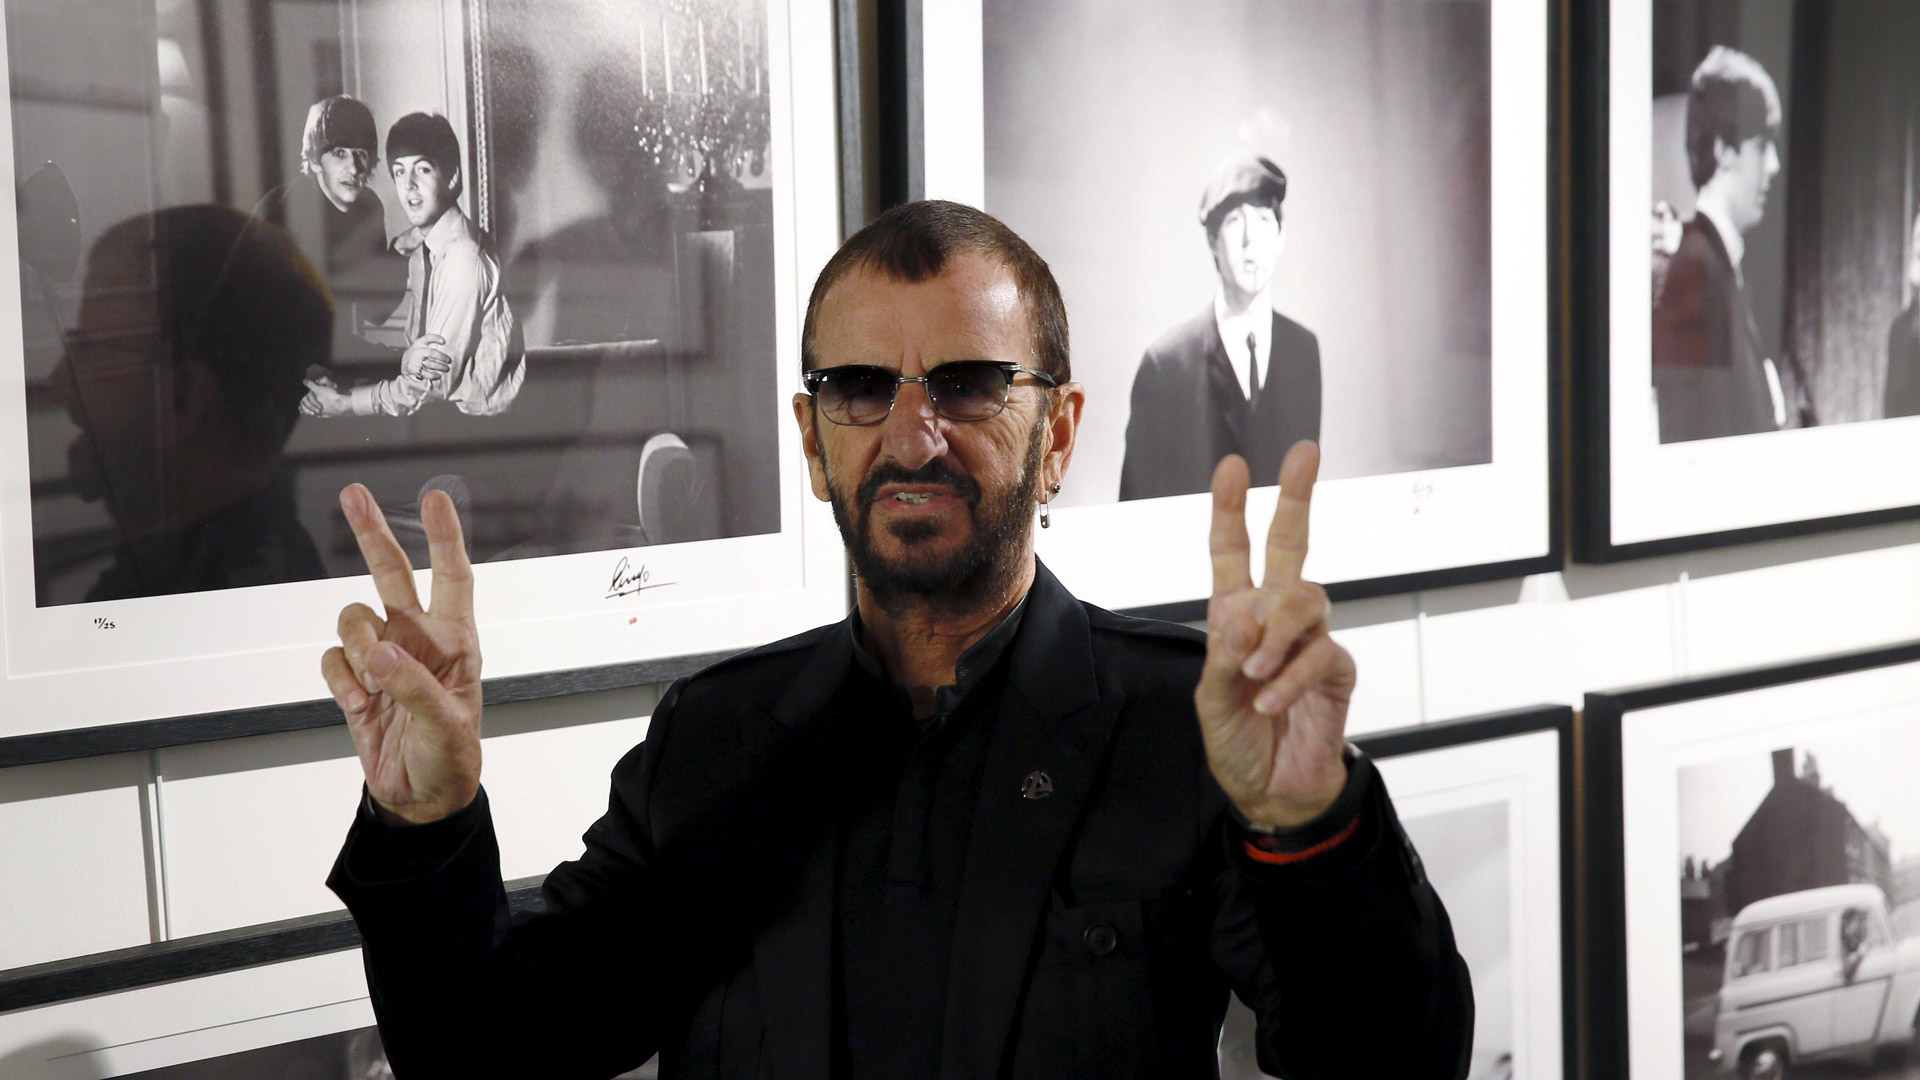 Algunas de las cosas que Ringo Starr son siete baterías y guitarras que le regalaron sus compañeros George Harrison y John Lennon